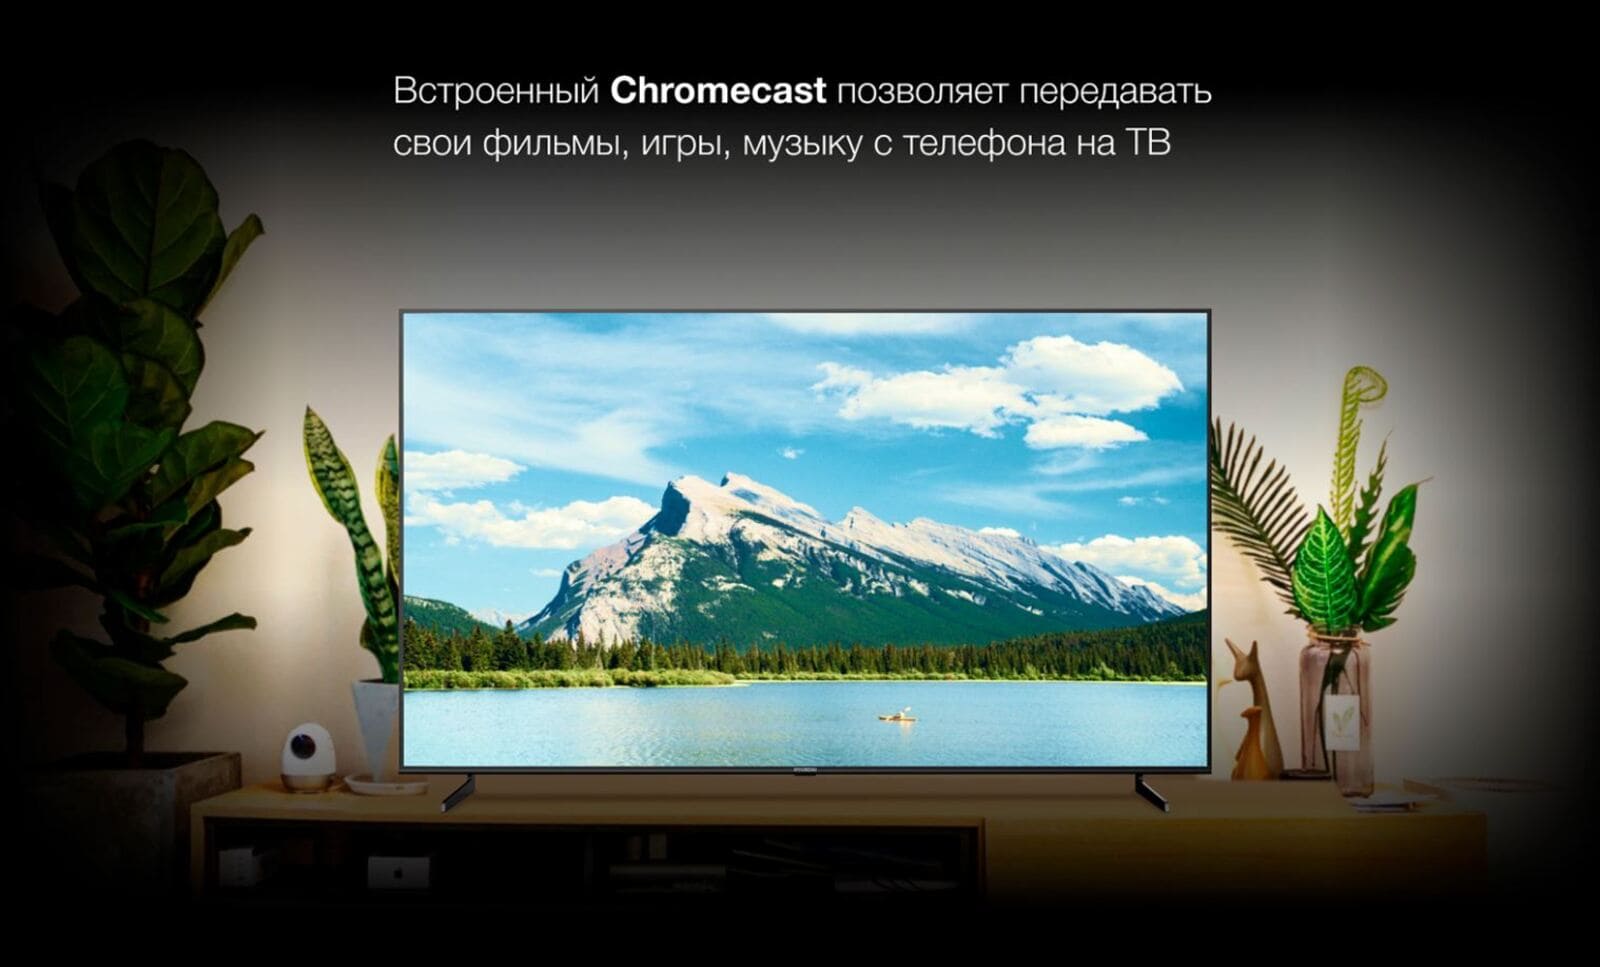 Встроенный Chromecast позволяет передавать свои фильмы, игры, музыку с телефона на ТВ.